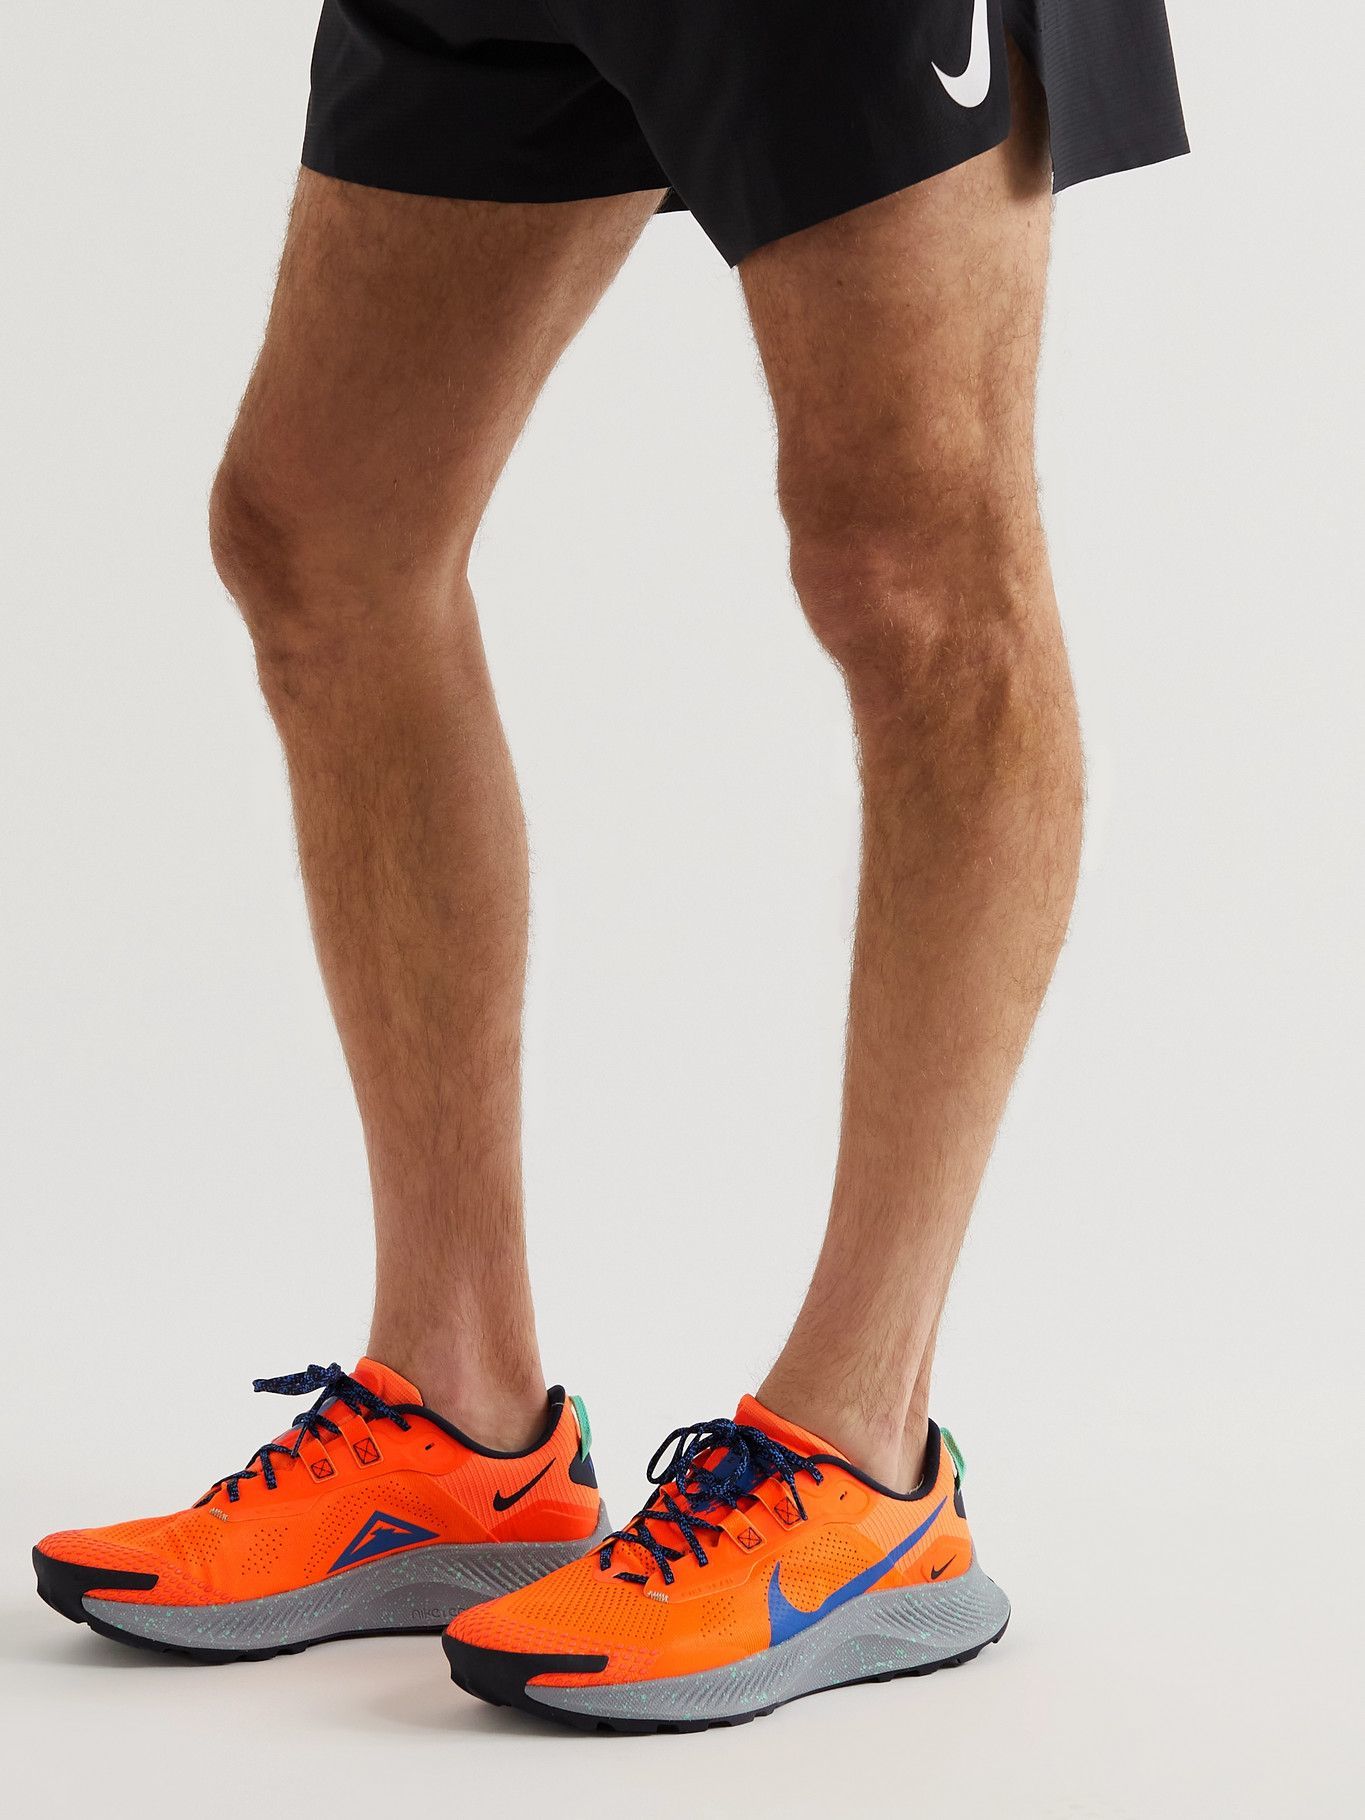 Nike nike men's pegasus trail 3 running shoes Running - Pegasus Trail 3 Mesh and Rubber Running Sneakers